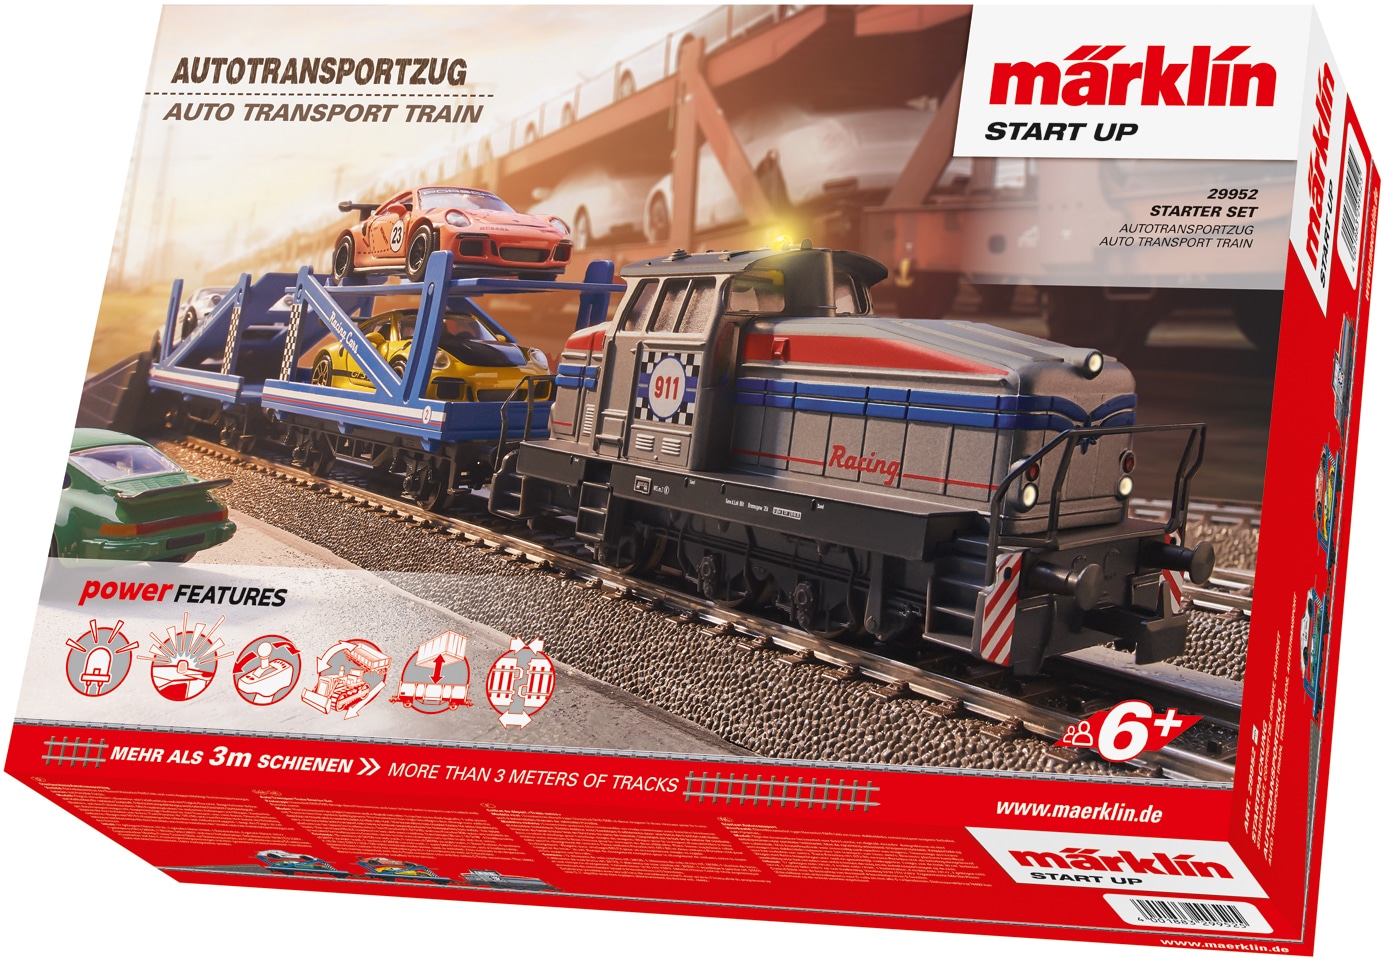 Märklin Spielzeugeisenbahn-Set »Märlin Start up - Startpackung Autotransportzug - 29952«, mit Licht; 230 V; Made in Europe